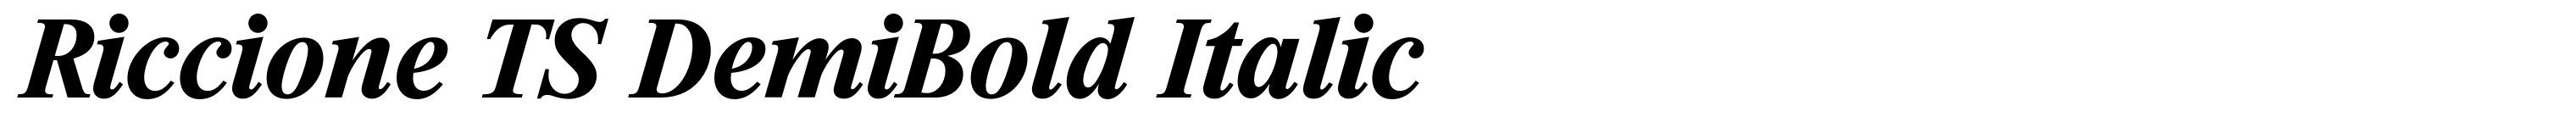 Riccione TS DemiBold Italic